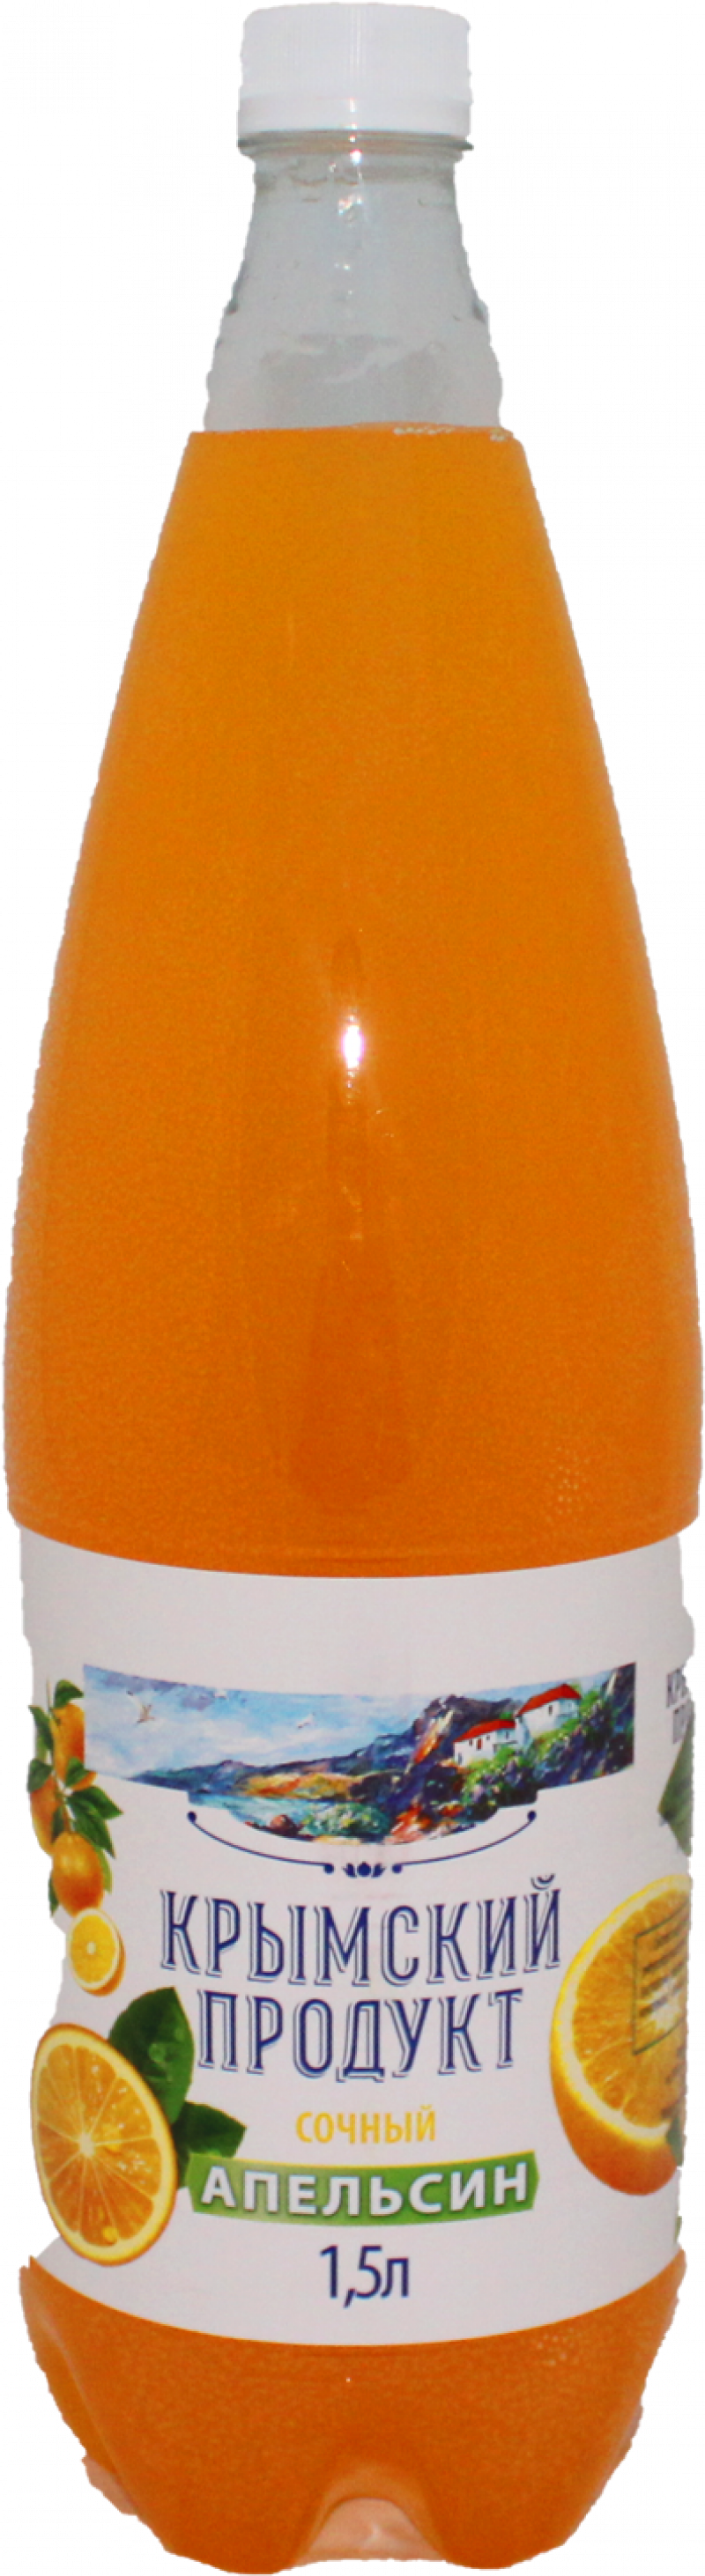 Напиток ТМ Крымский продукт Апельсин 1,5л